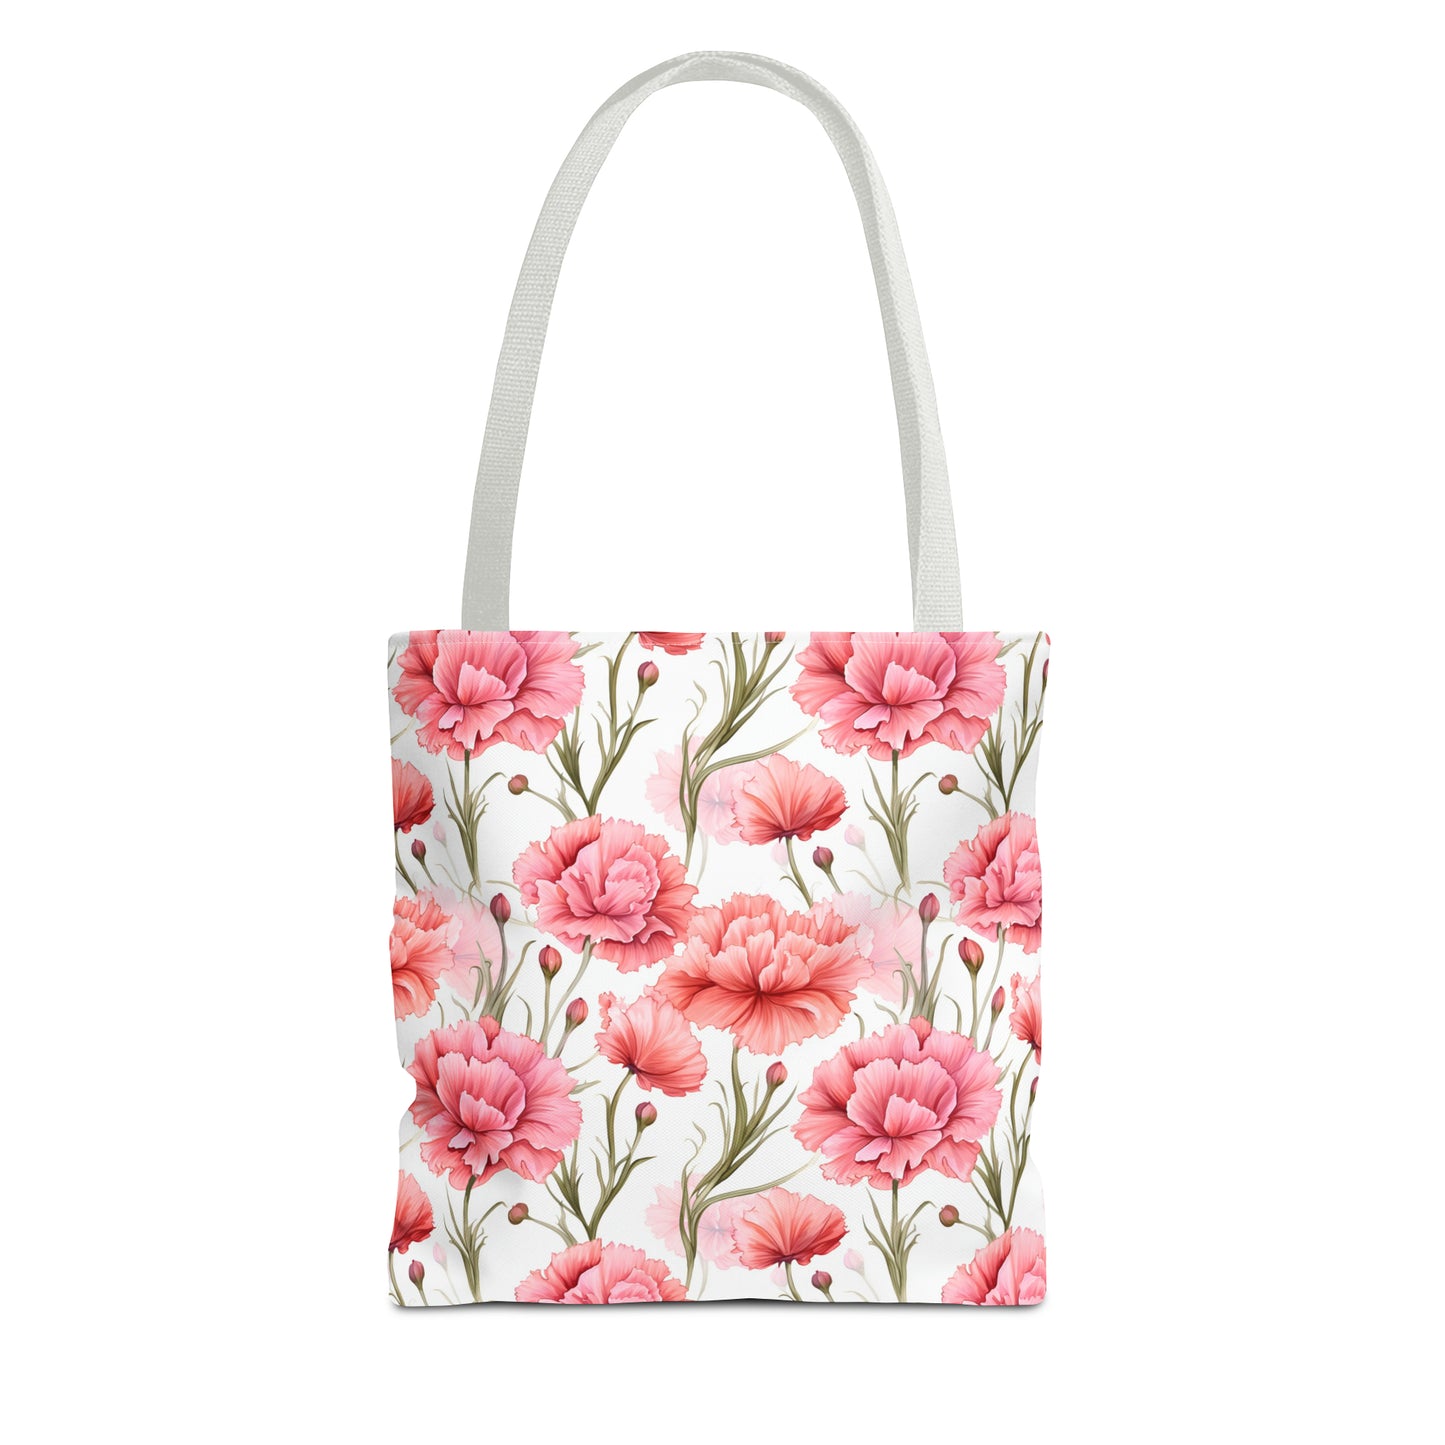 Pastel Blooms Carnation Tote Bag (13" x 13")